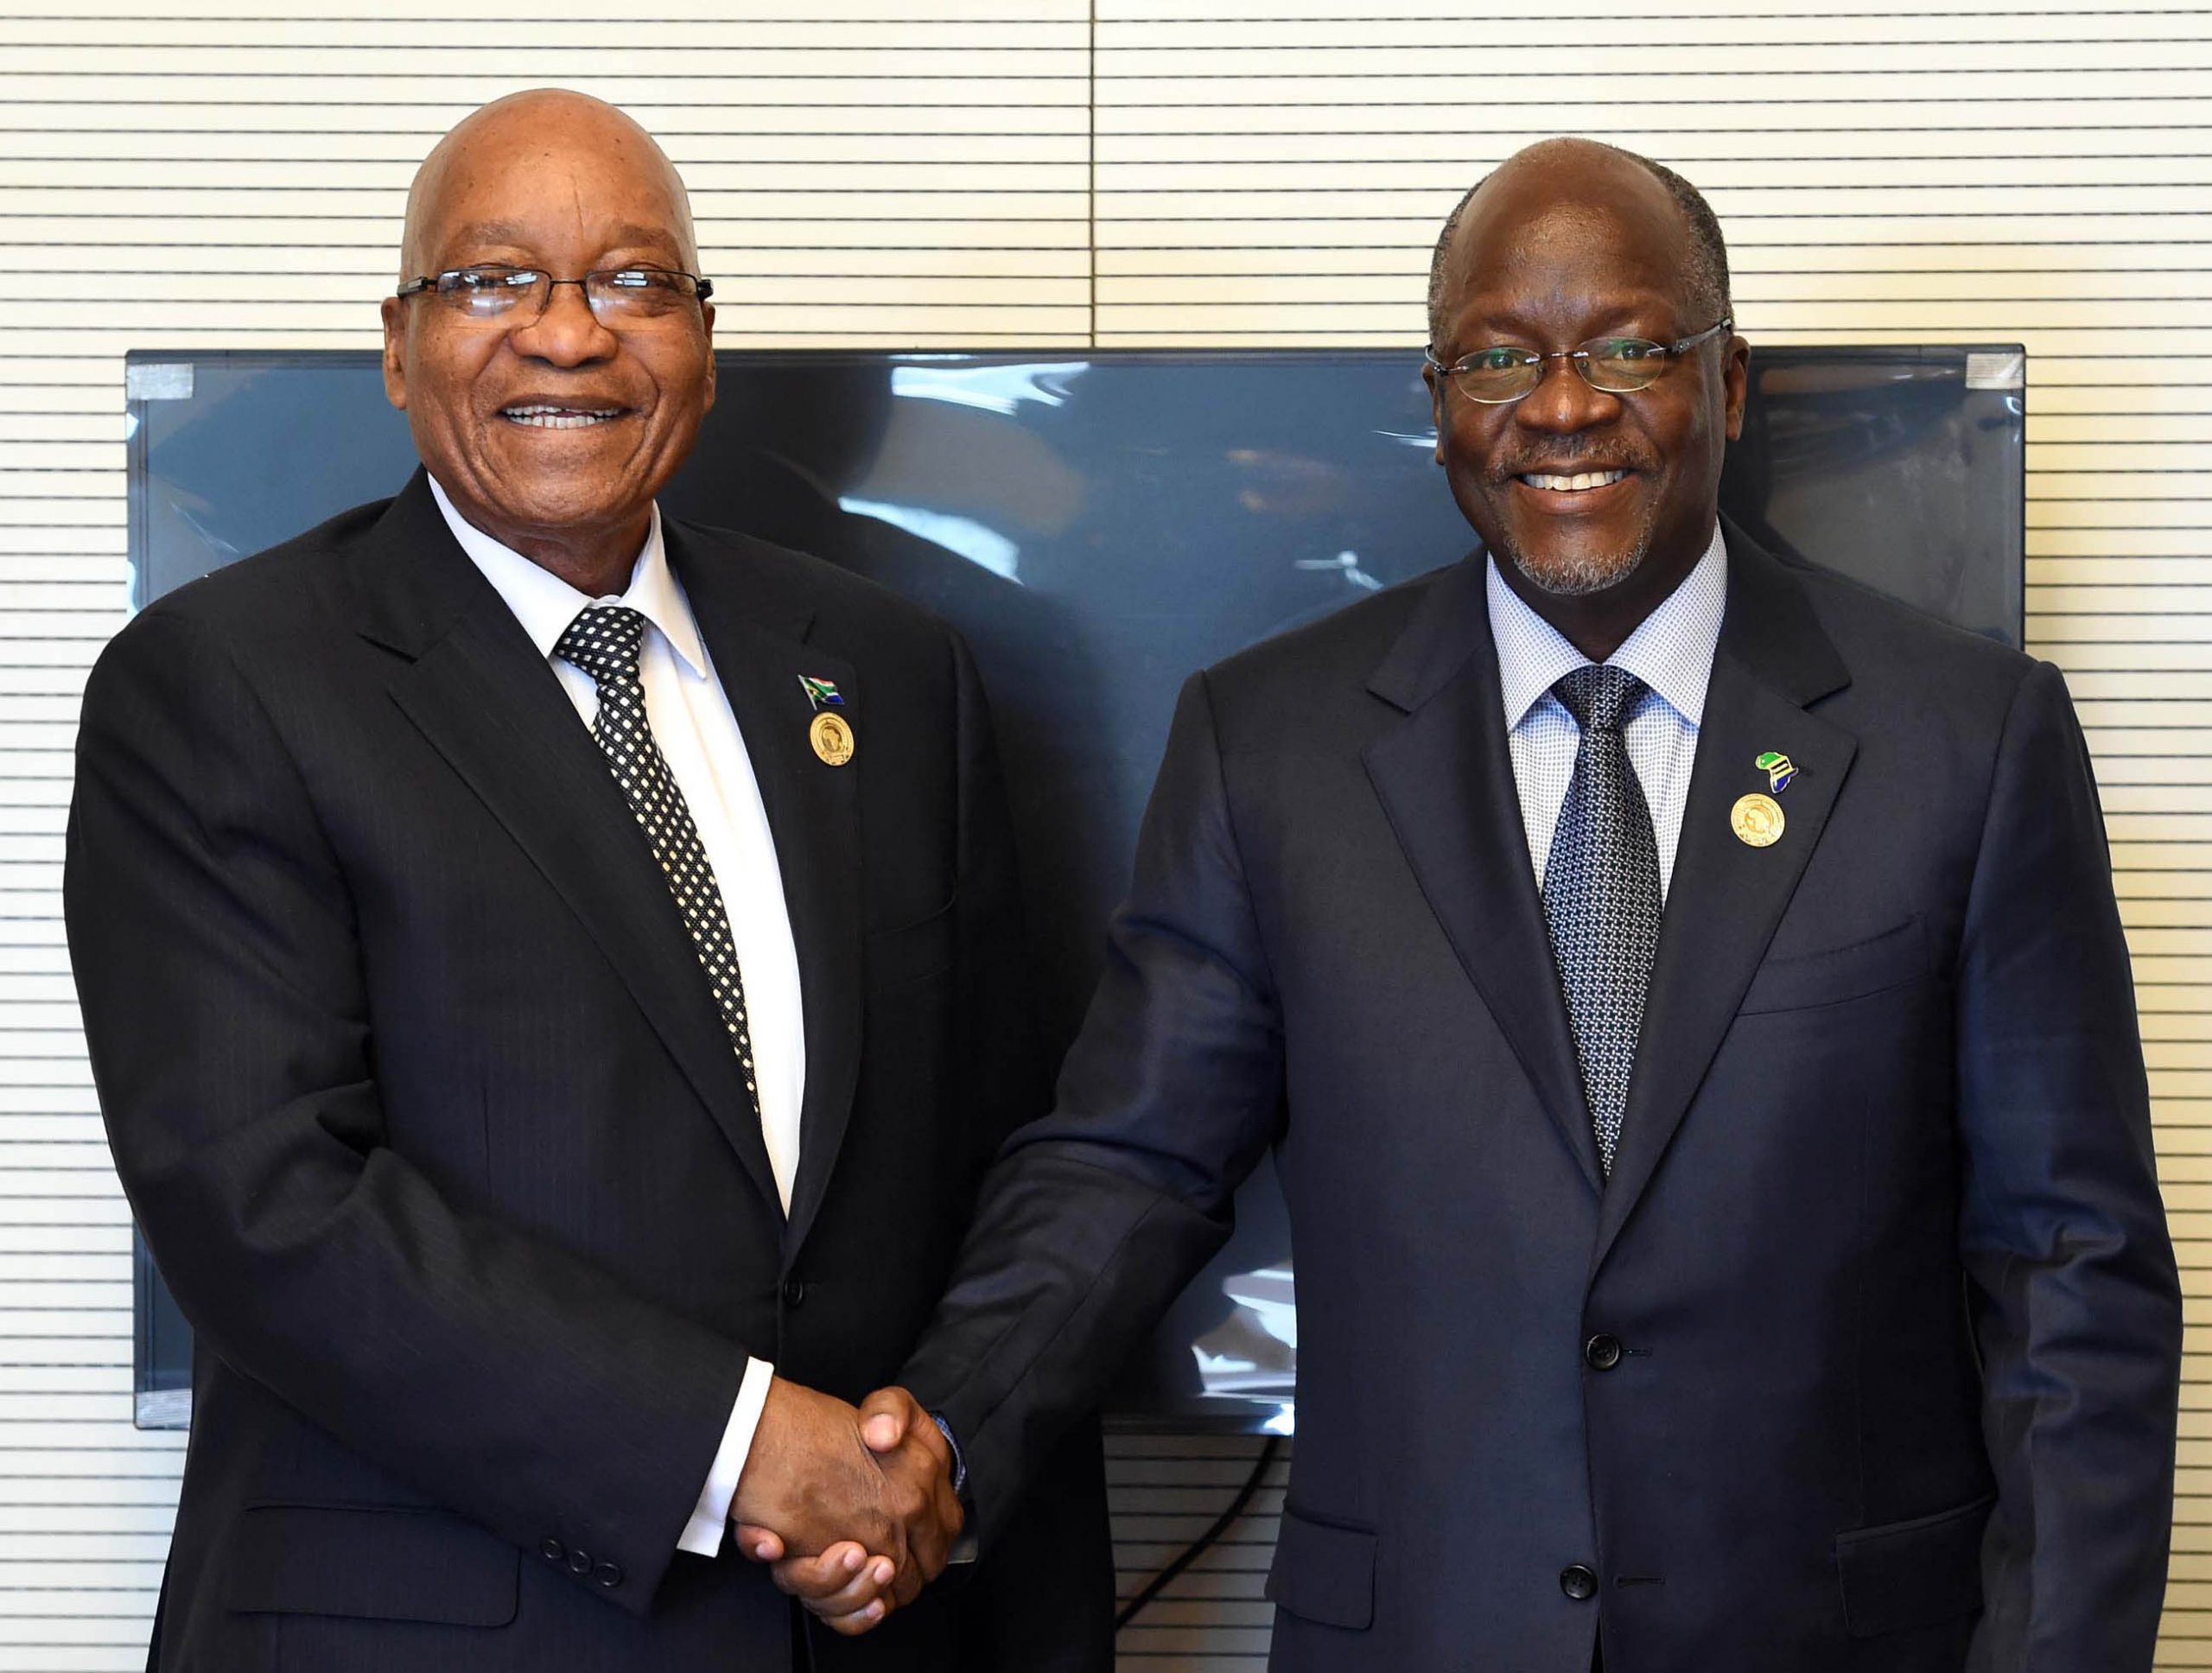 Etelä-Afrikan presidentti Jacob Zuma tapasi Tansanian presidentti John Magufulin tammikuussa 2017 Etiopiassa.